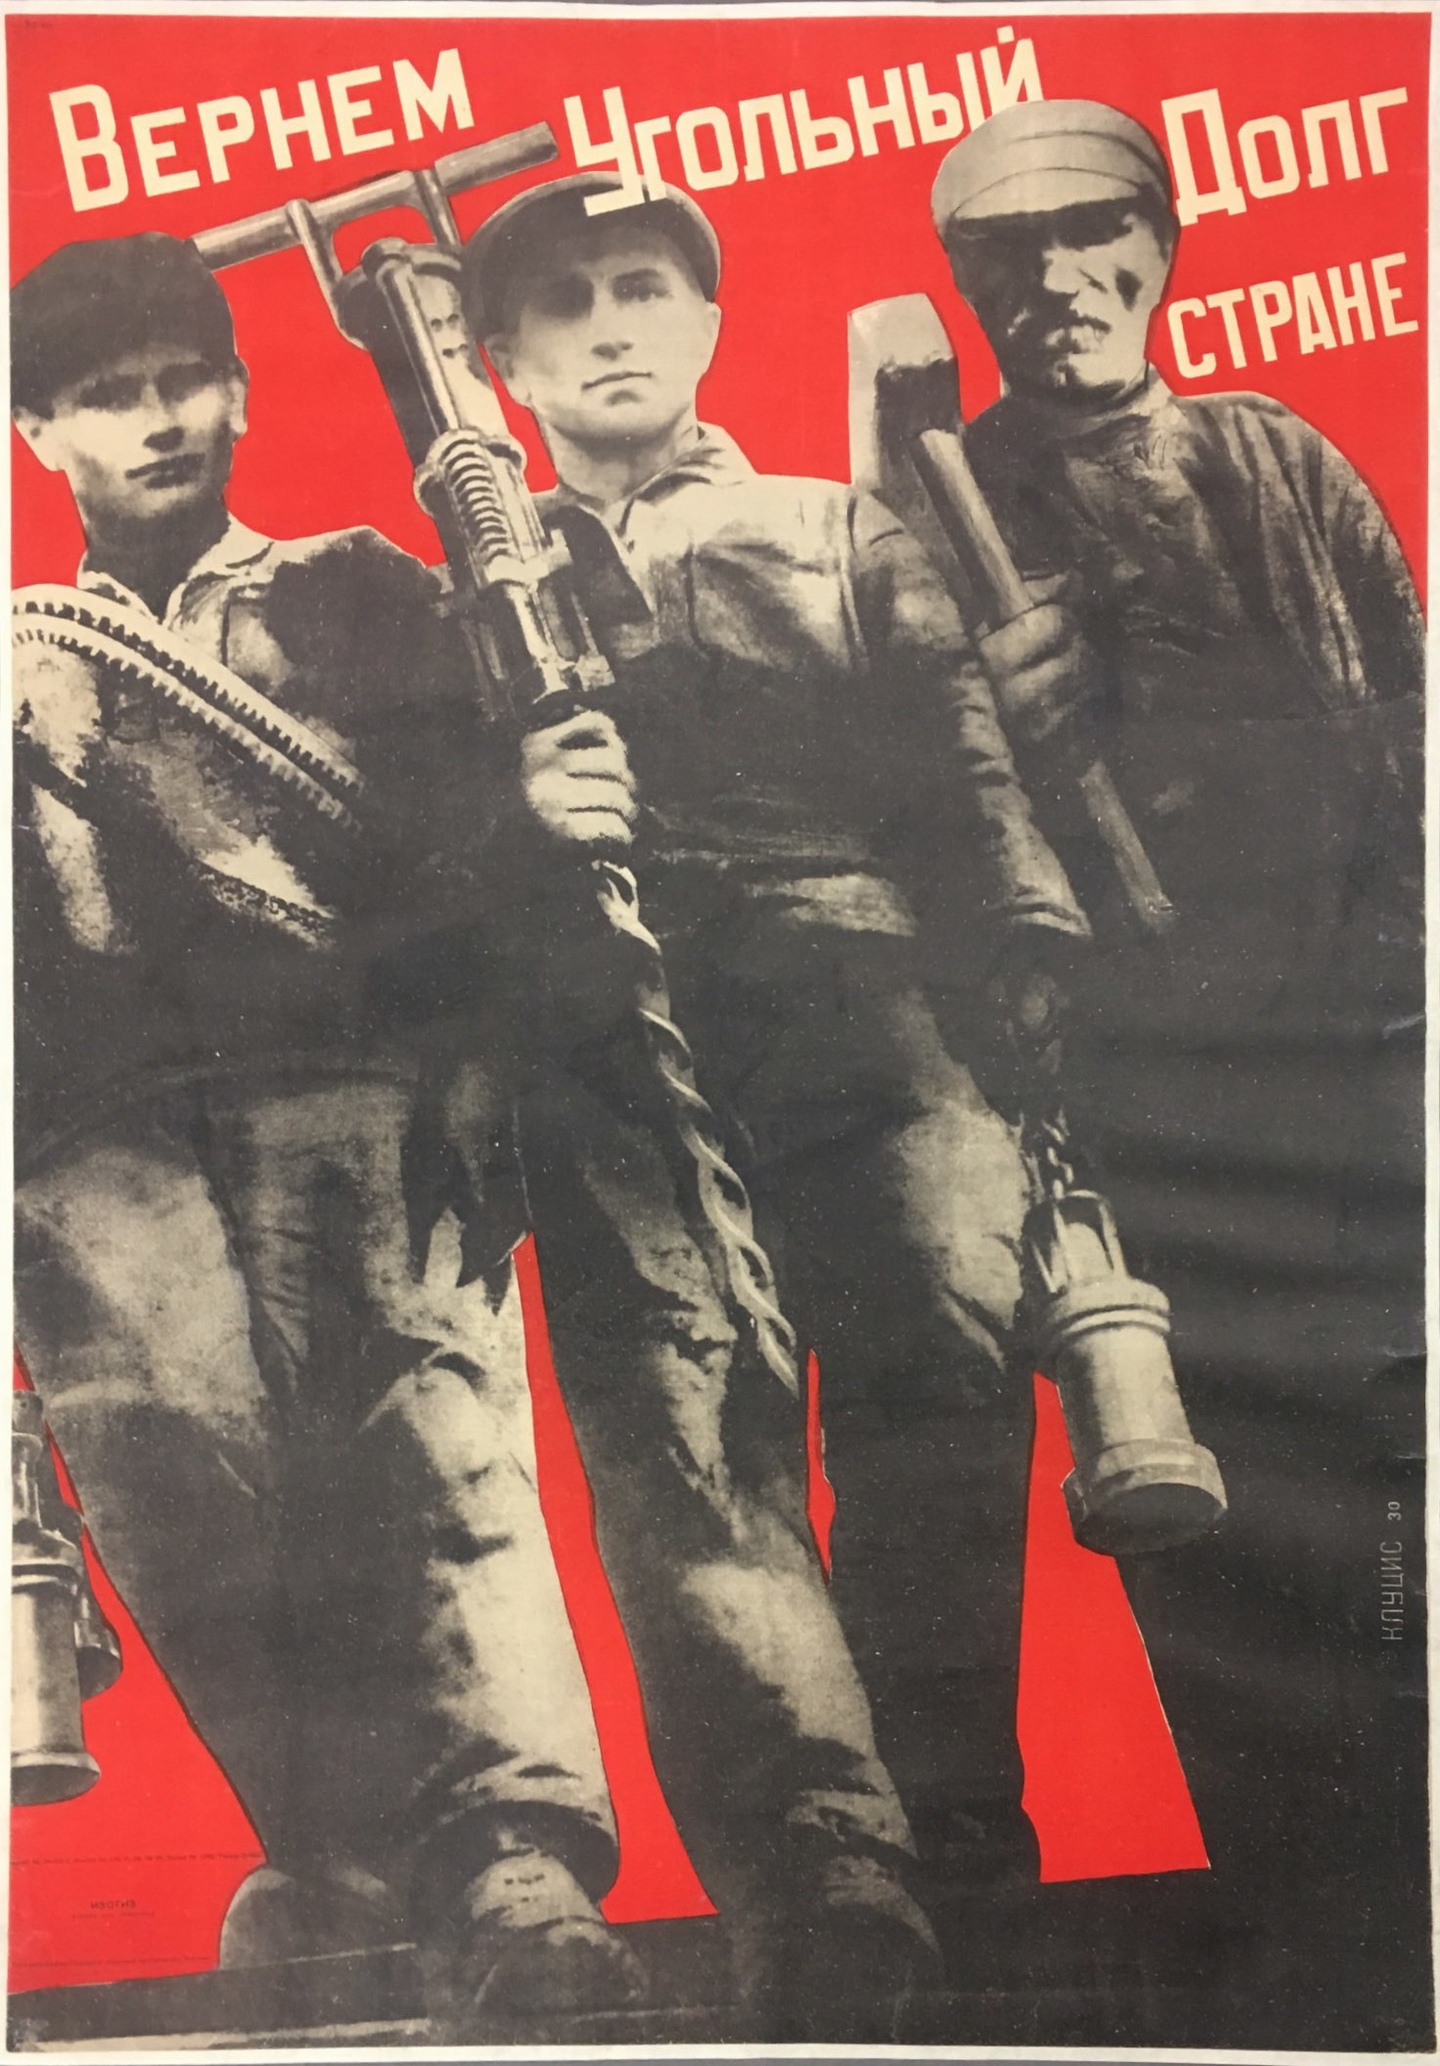 Вернем угольный долг стране. Плакат к механизации Донбасса, 1930 г. Худ. Клуцис